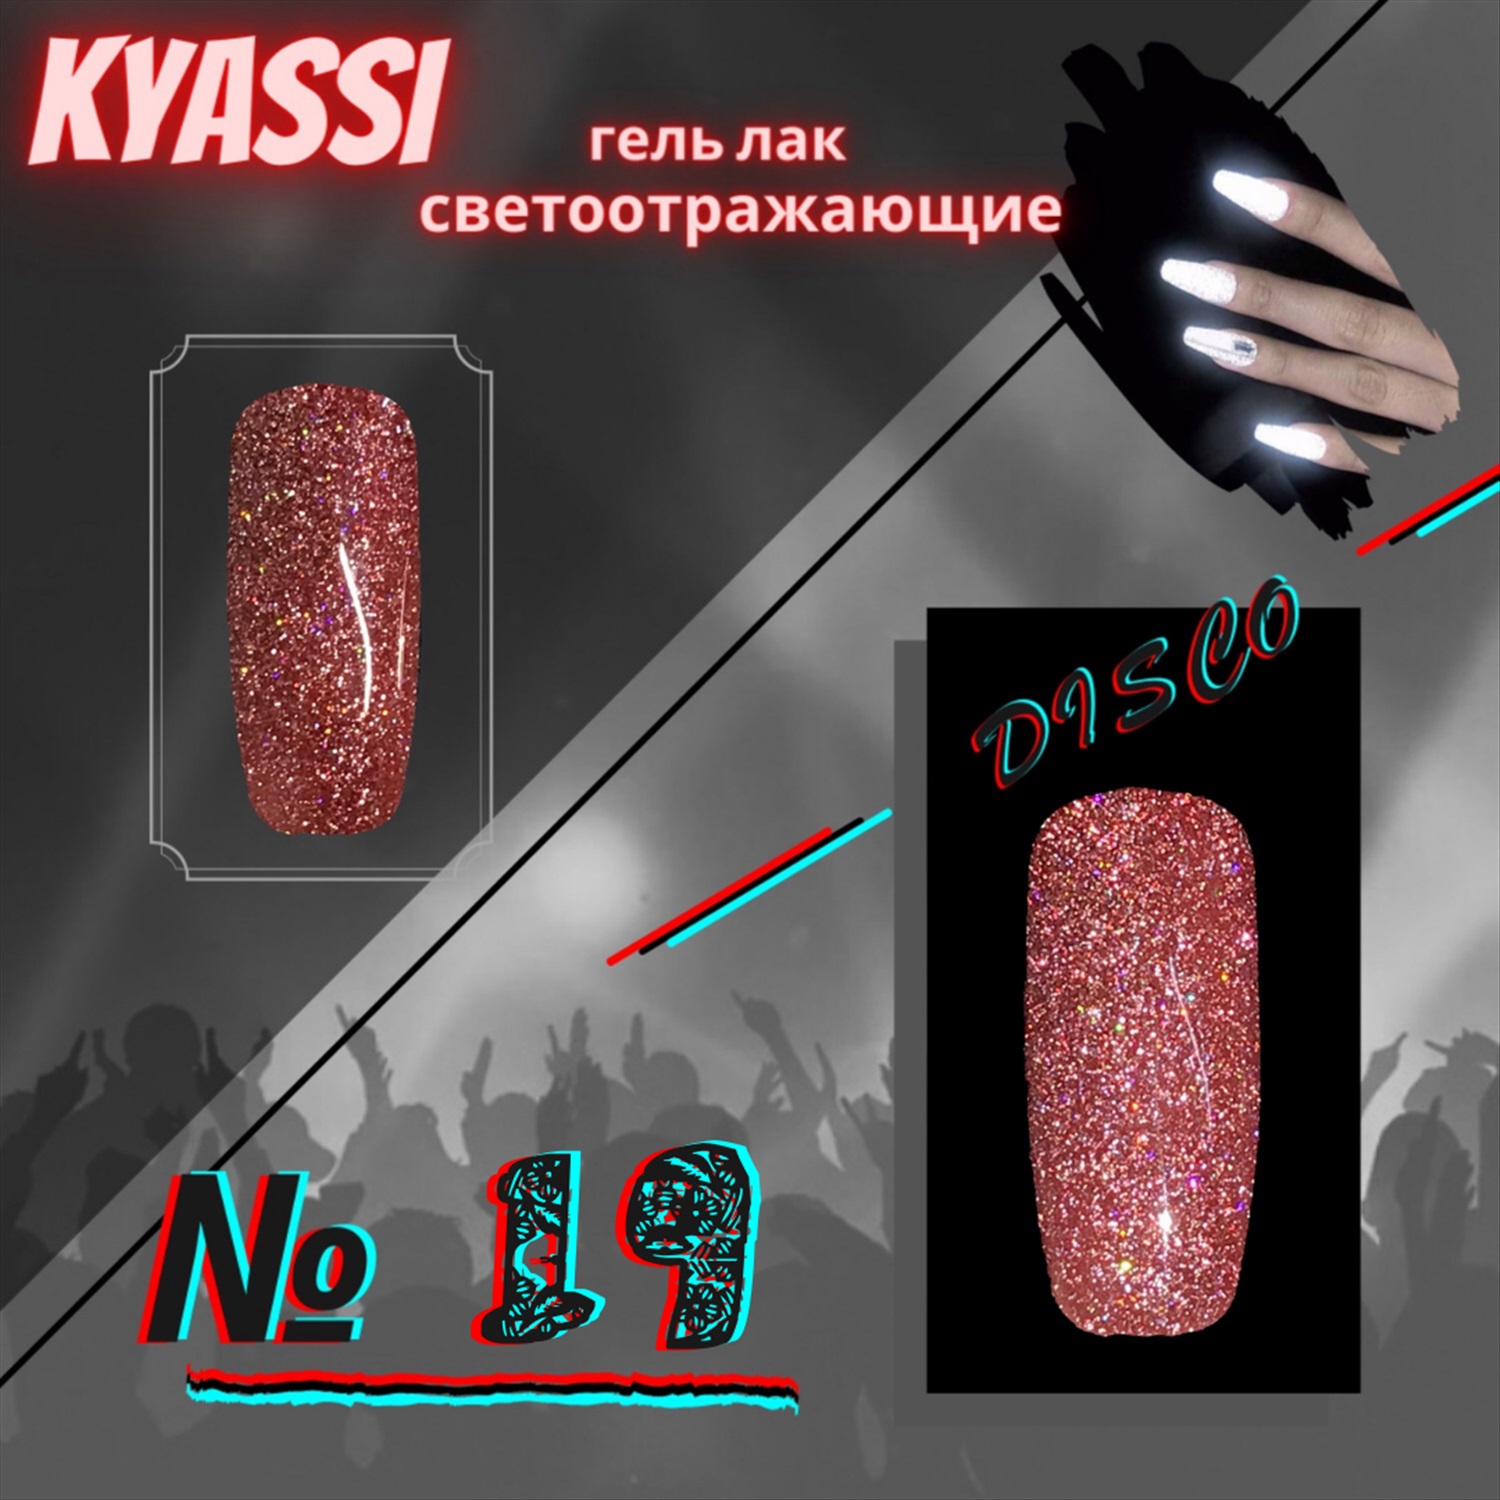 Kyassi гель-лак светоотражающий Disco № 01